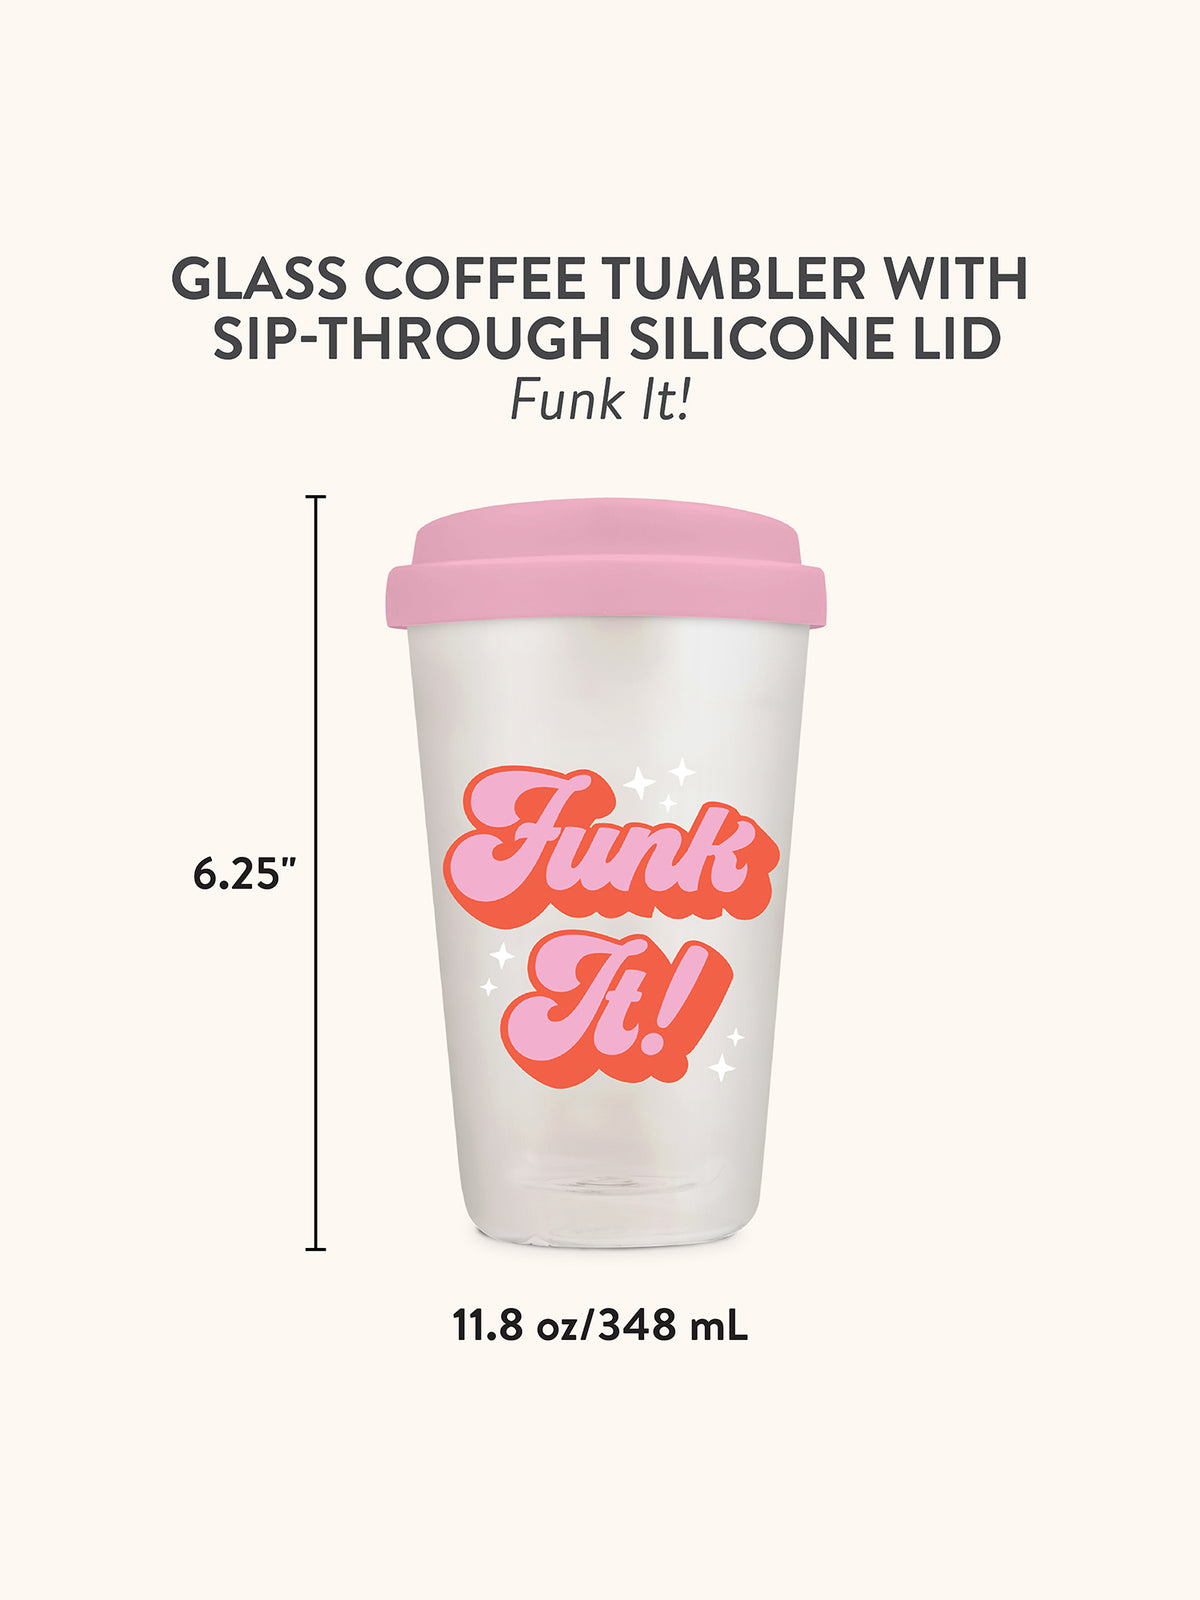 Funk It! Glass Coffee Tumbler